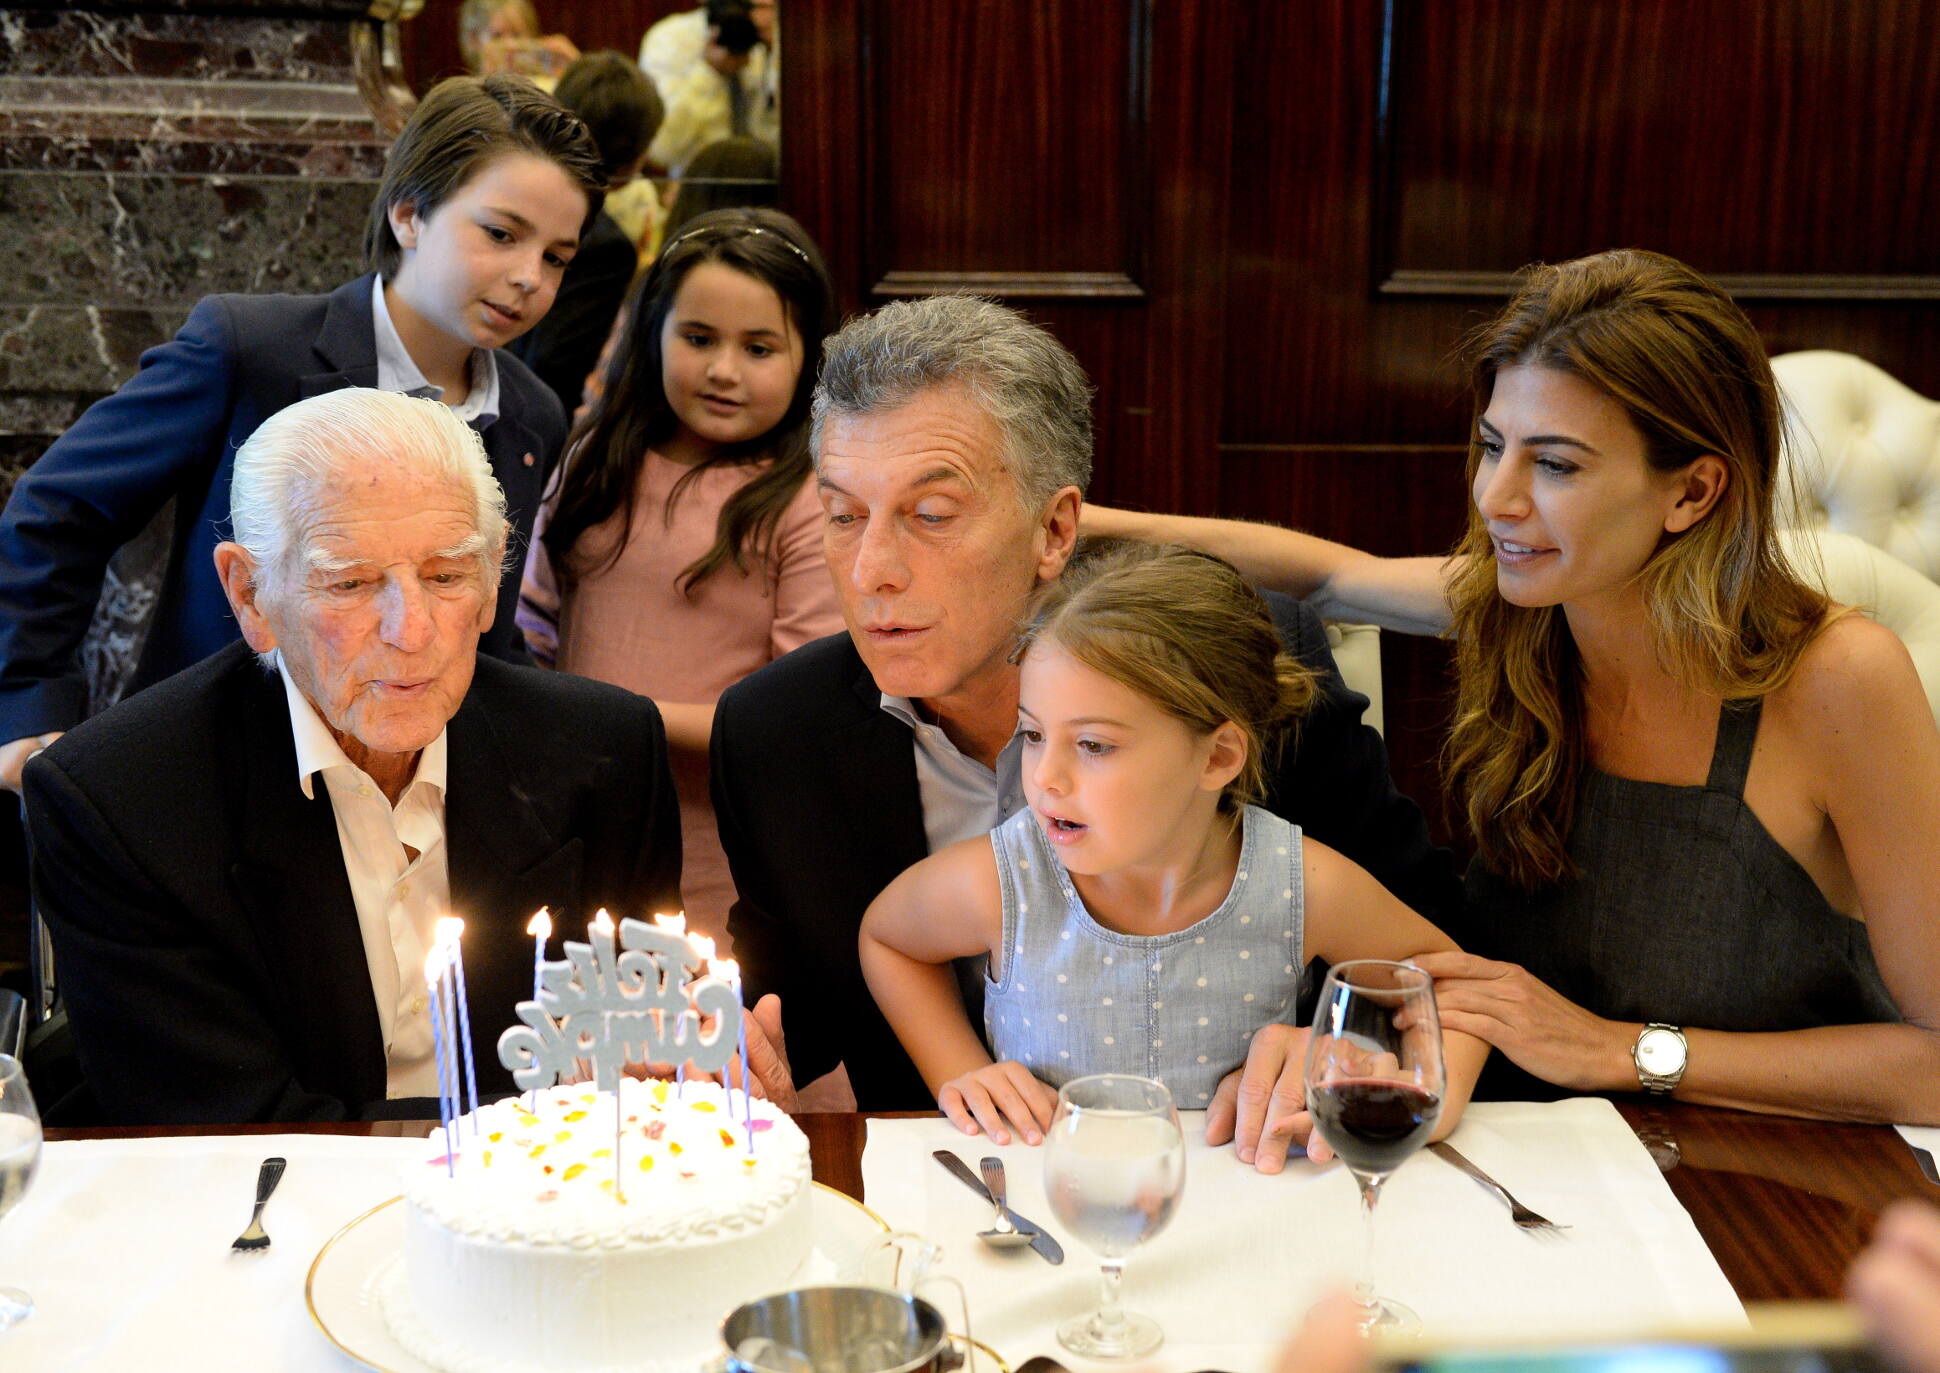 El Presidente celebró su cumpleaños en Casa Rosada con un jubilado de 100 años